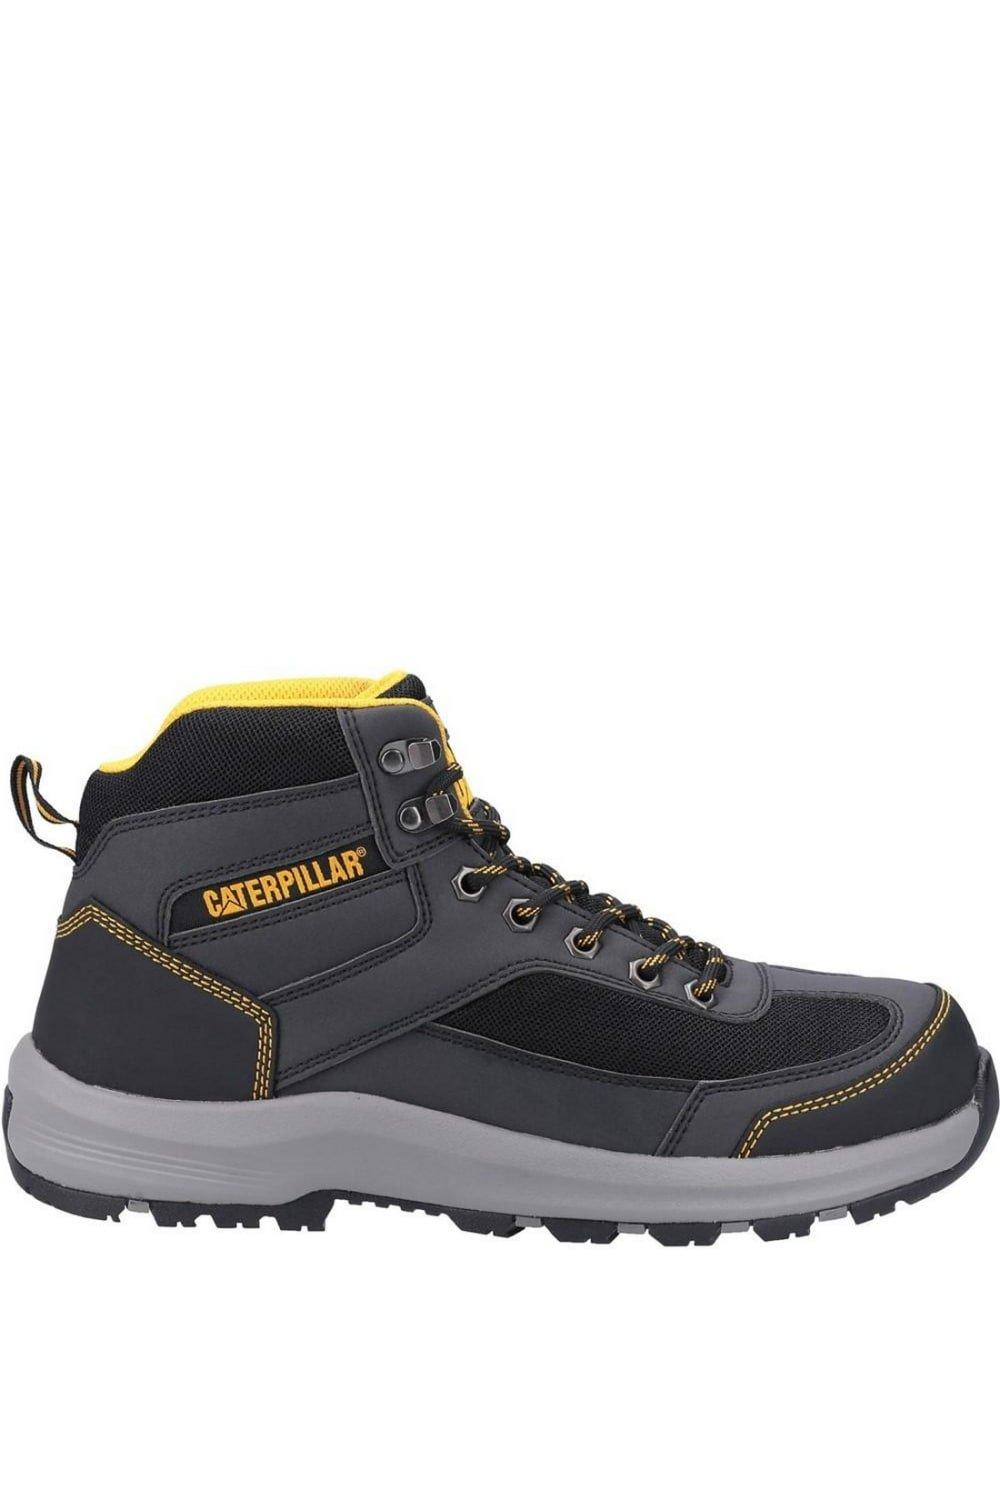 Защитные ботинки Элмора Caterpillar, серый 1028 хl защита ног тхэквондо каратэ пу эва упаковка премиум пакет на кнопке